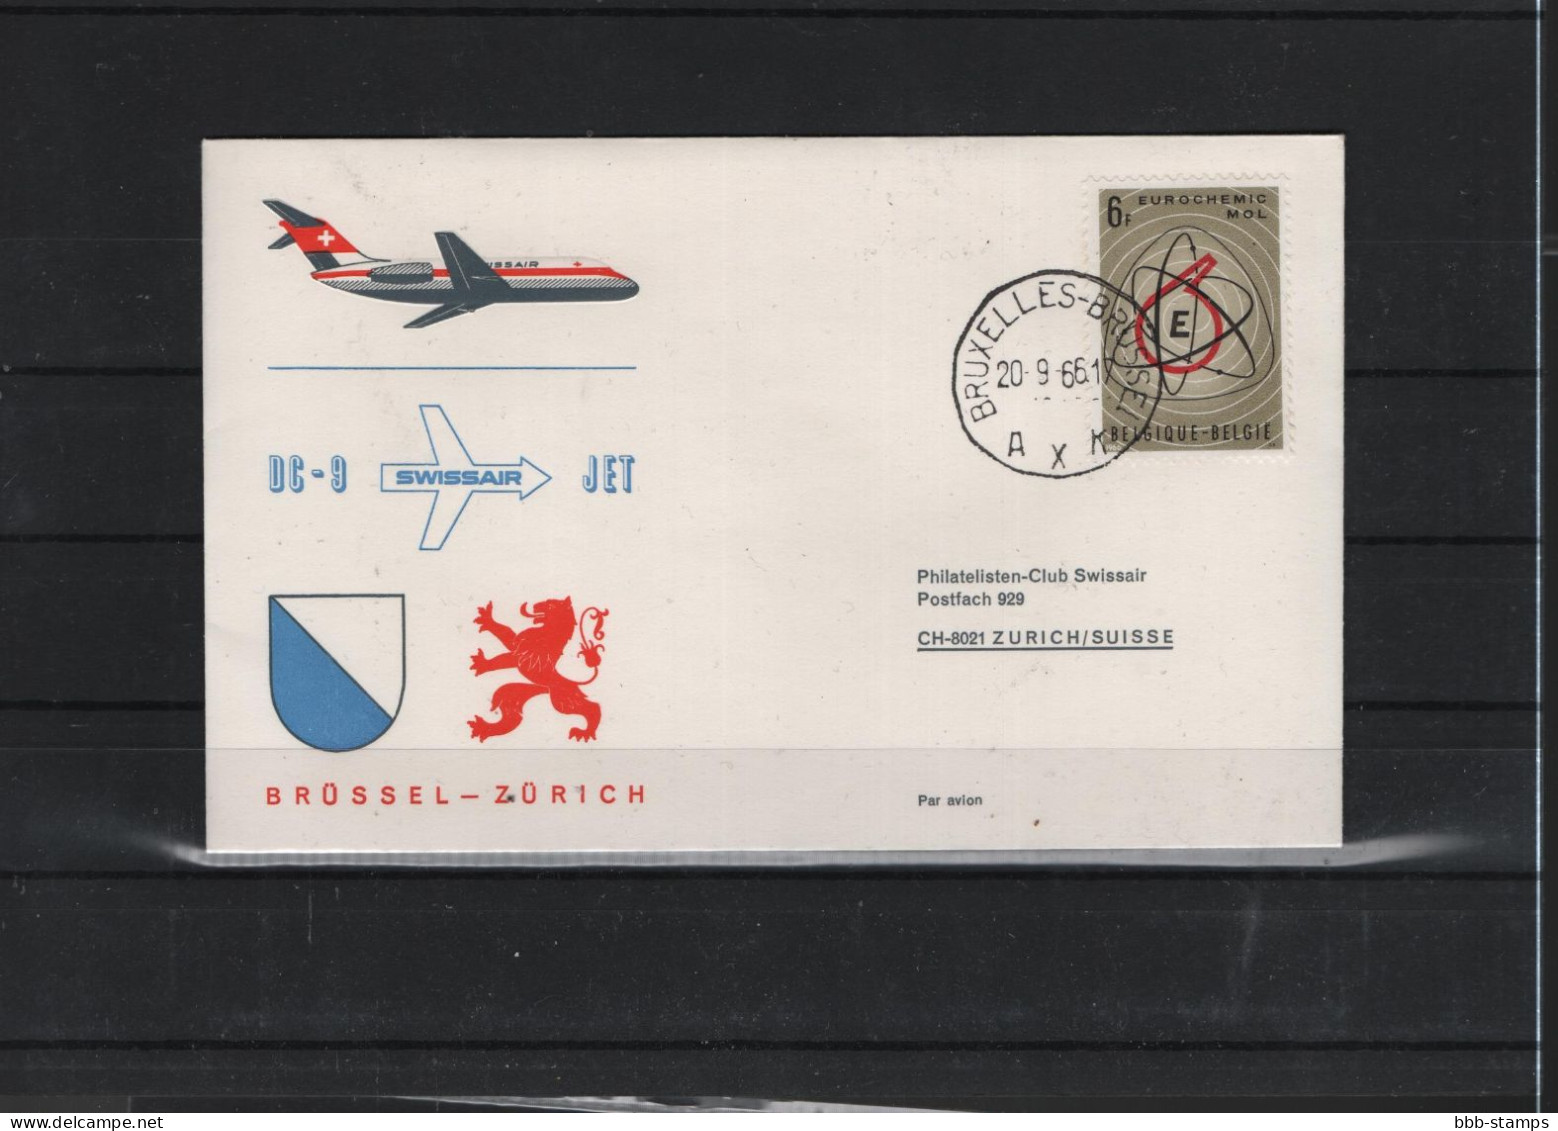 Schweiz Air Mail Swissair  FFC  20.9.2066 Zürich - Brüssel Vv - Primi Voli